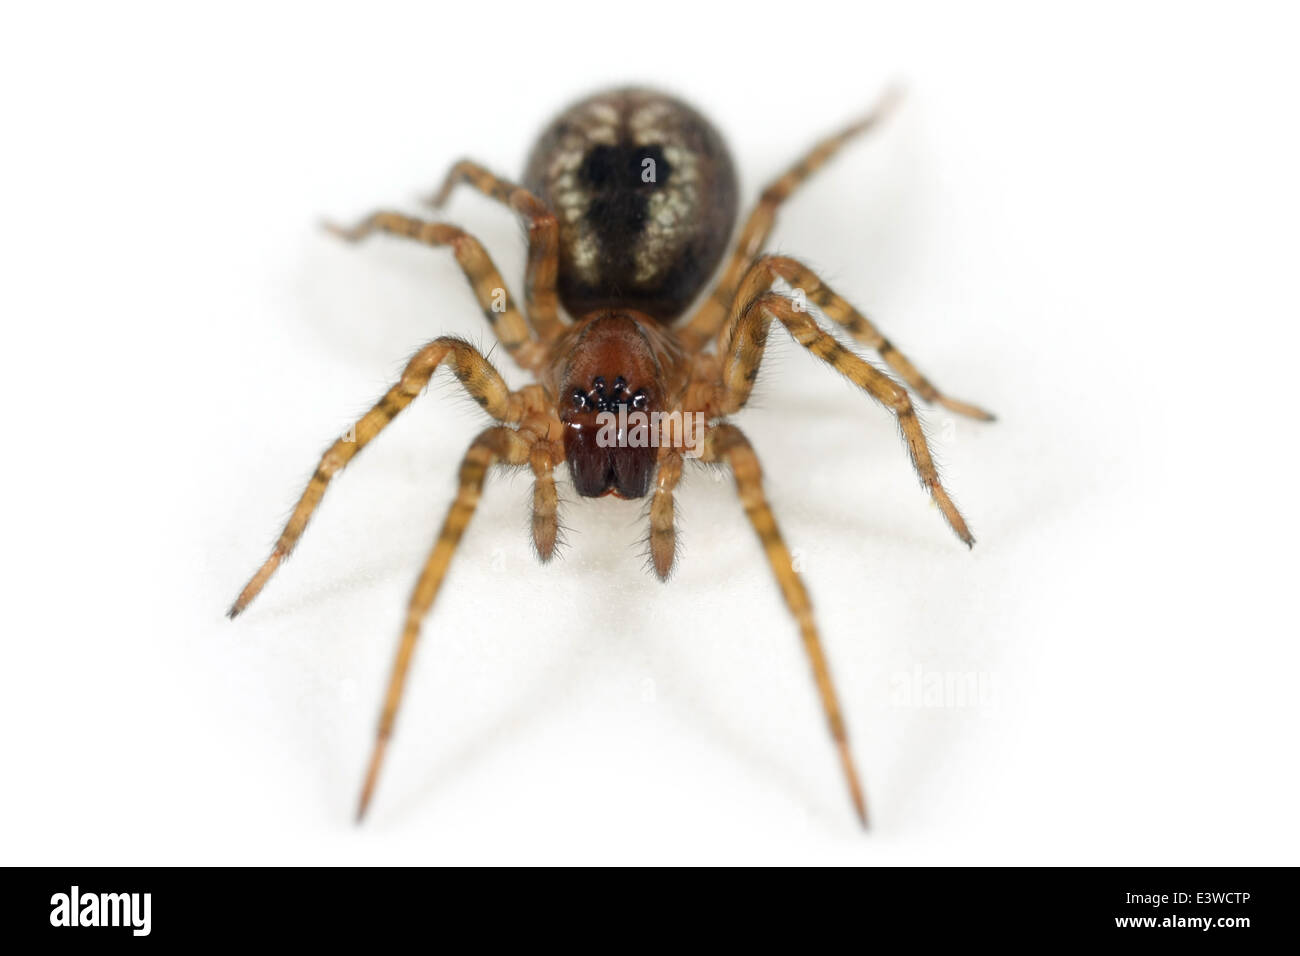 Fenster-Spitzen-Weber (Amaurobius Fenestralis)-Spinne, Teil der Familie  Amaurobiidae - Tangled nisten Spinnen Stockfotografie - Alamy